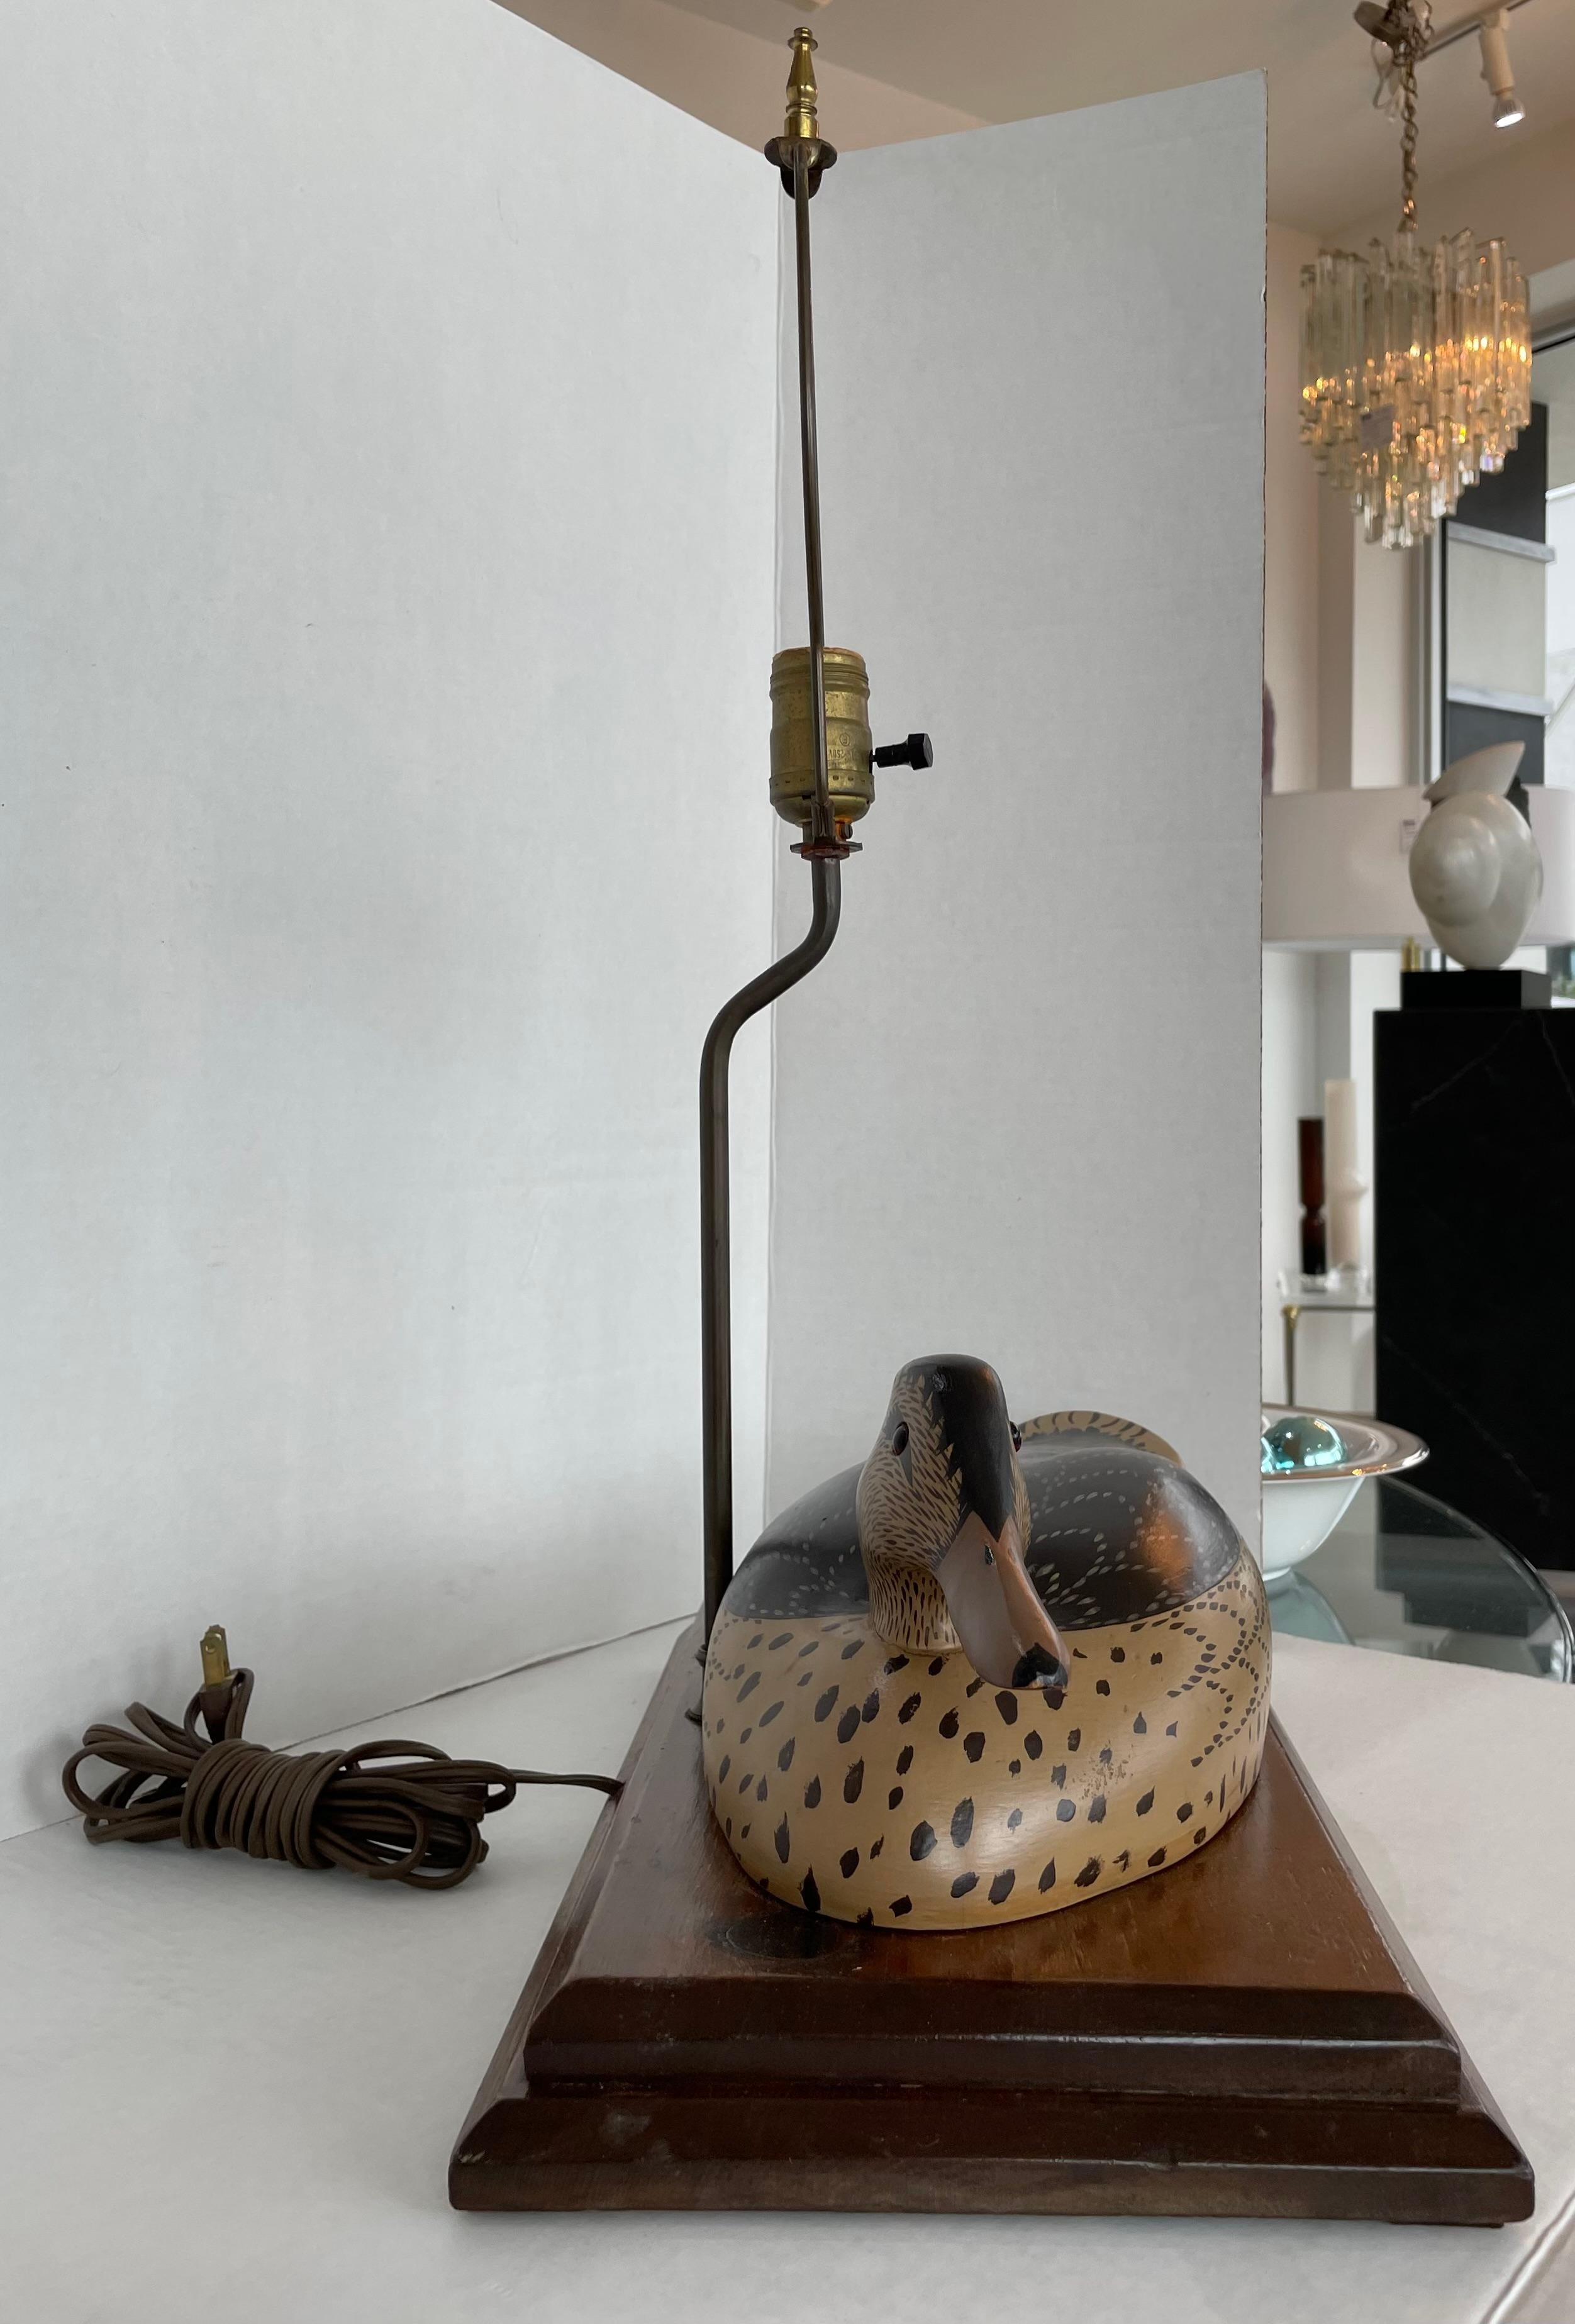 Diese stilvolle und schicke Entenköder-Tischlampe setzt mit ihrer Form und den handgemalten Details einen subtilen Akzent. 

Hinweis: Der Sockel misst 1,75